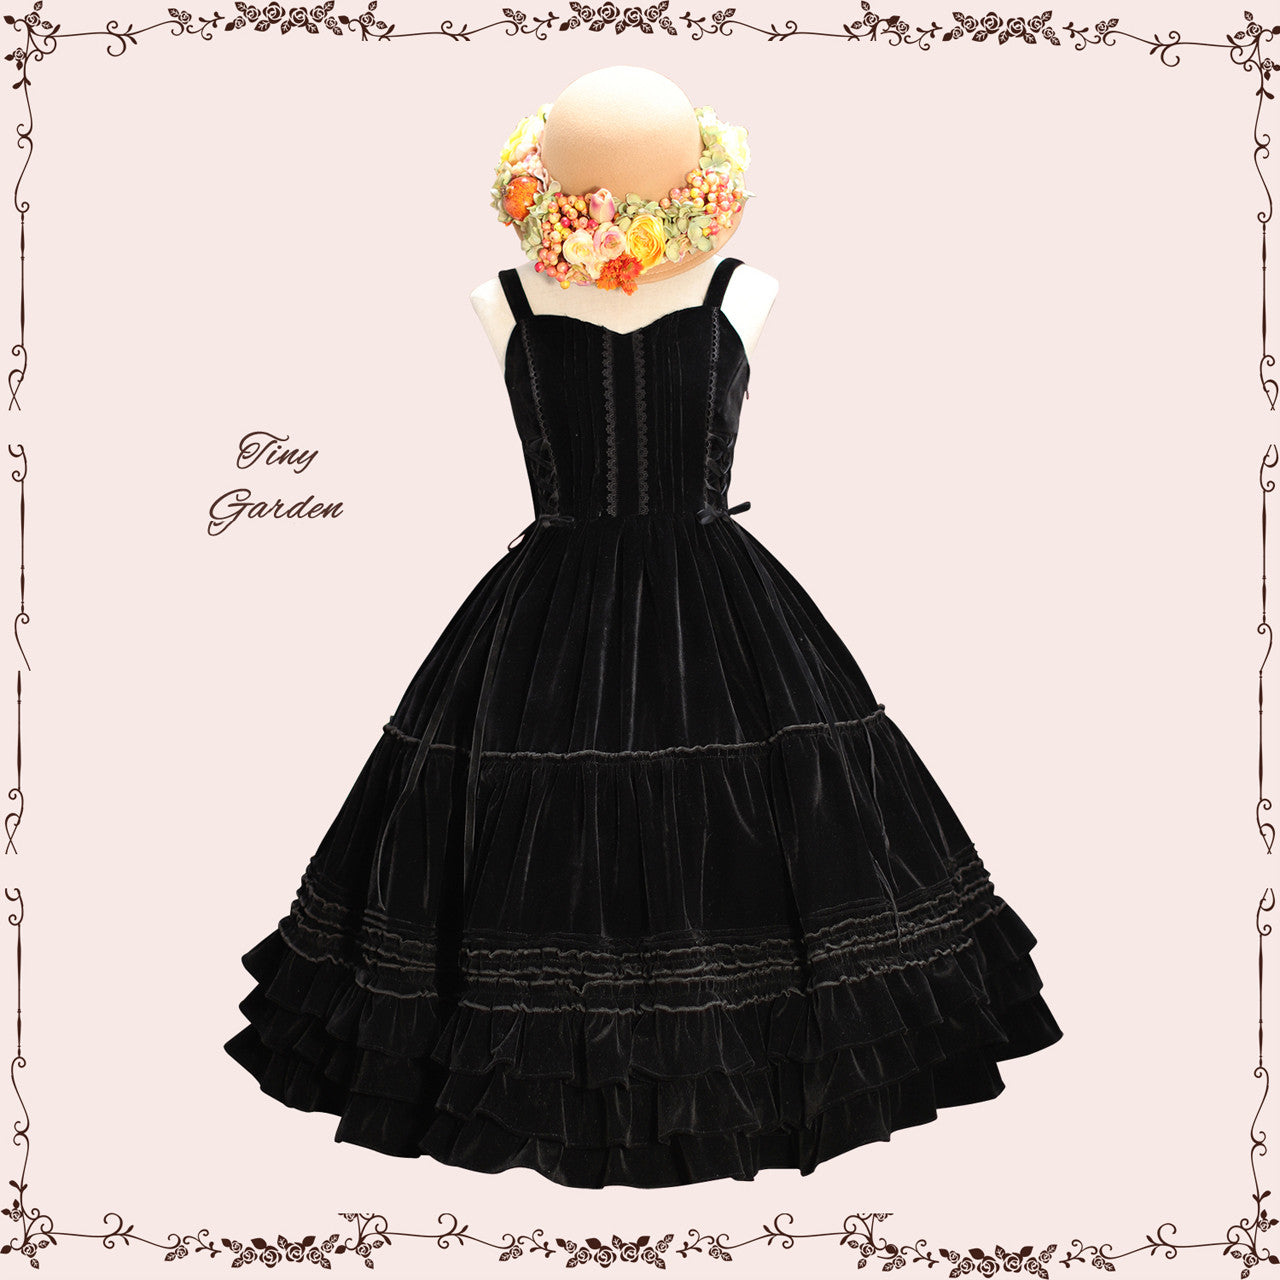 Tiny Garden~Garden Dance 2.0 Elegant Lolita JSK S velvet black (suit for Autumn and Winter) 